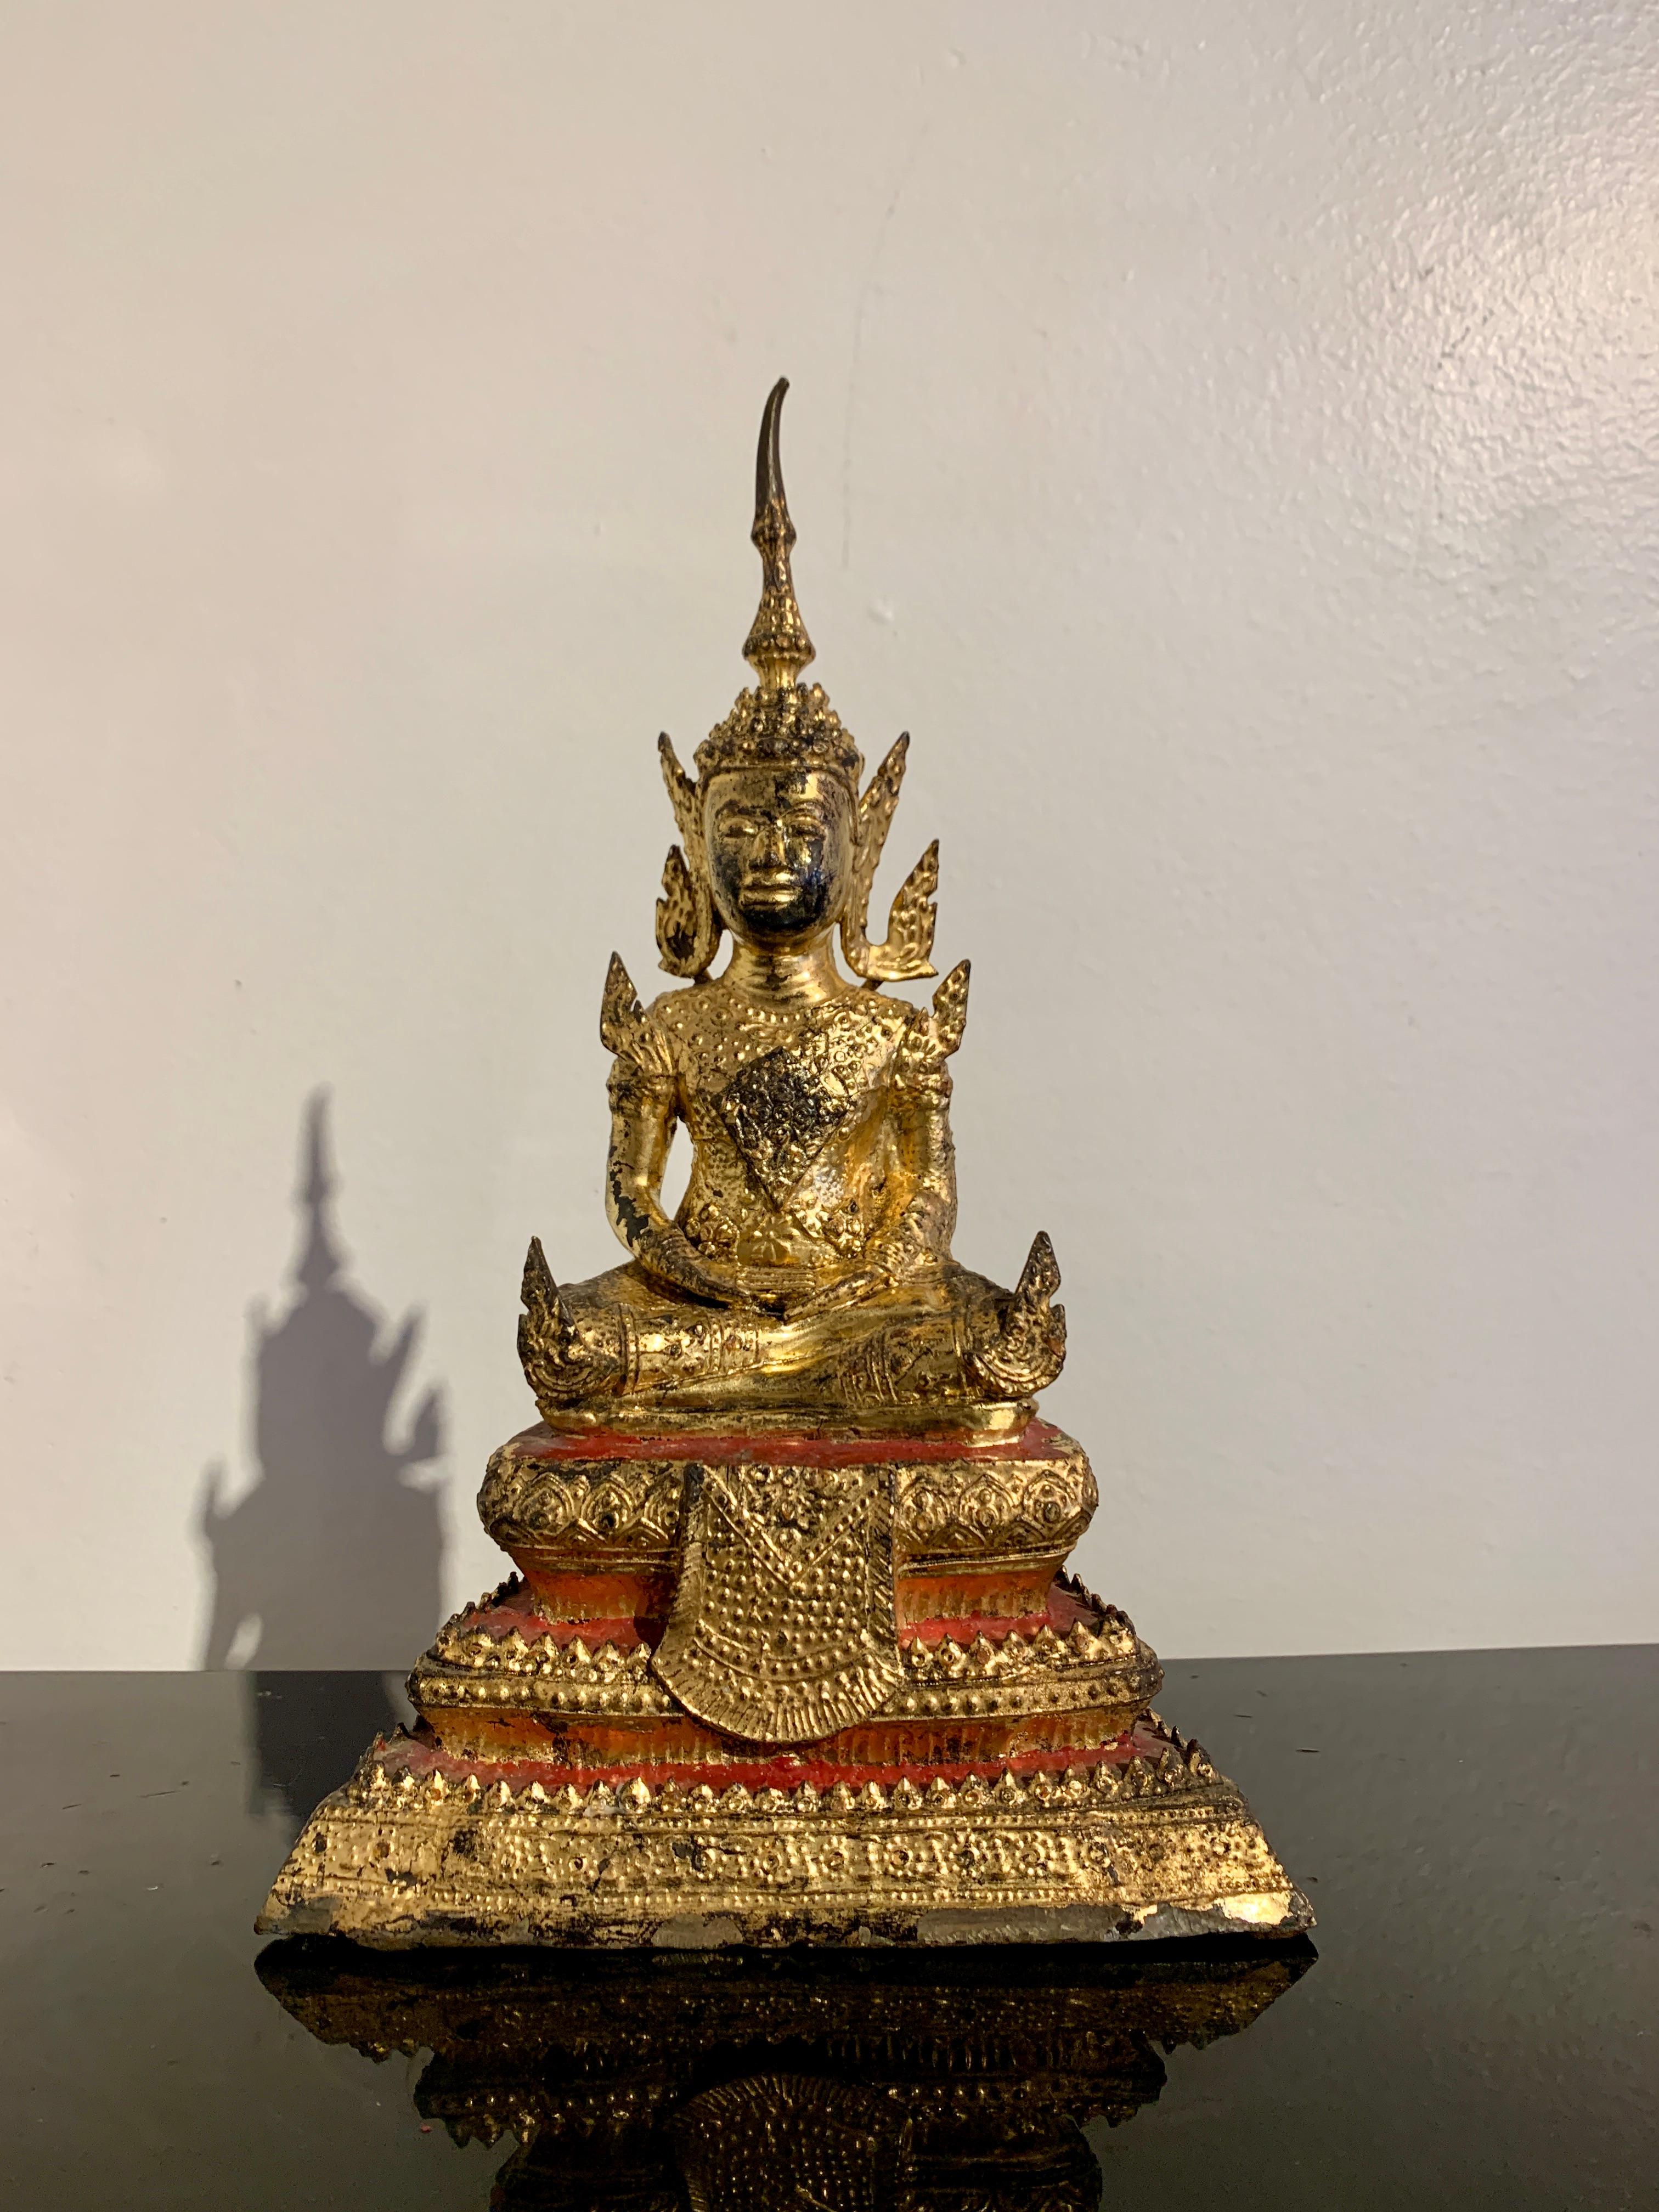 Ravissante figurine en bronze laqué et doré représentant le Bouddha en tenue royale, période Rattanakosin, Thaïlande, milieu du 19e siècle.

Cette charmante figure représente le Bouddha en dhyanasana, le geste de la méditation. Le Bouddha est